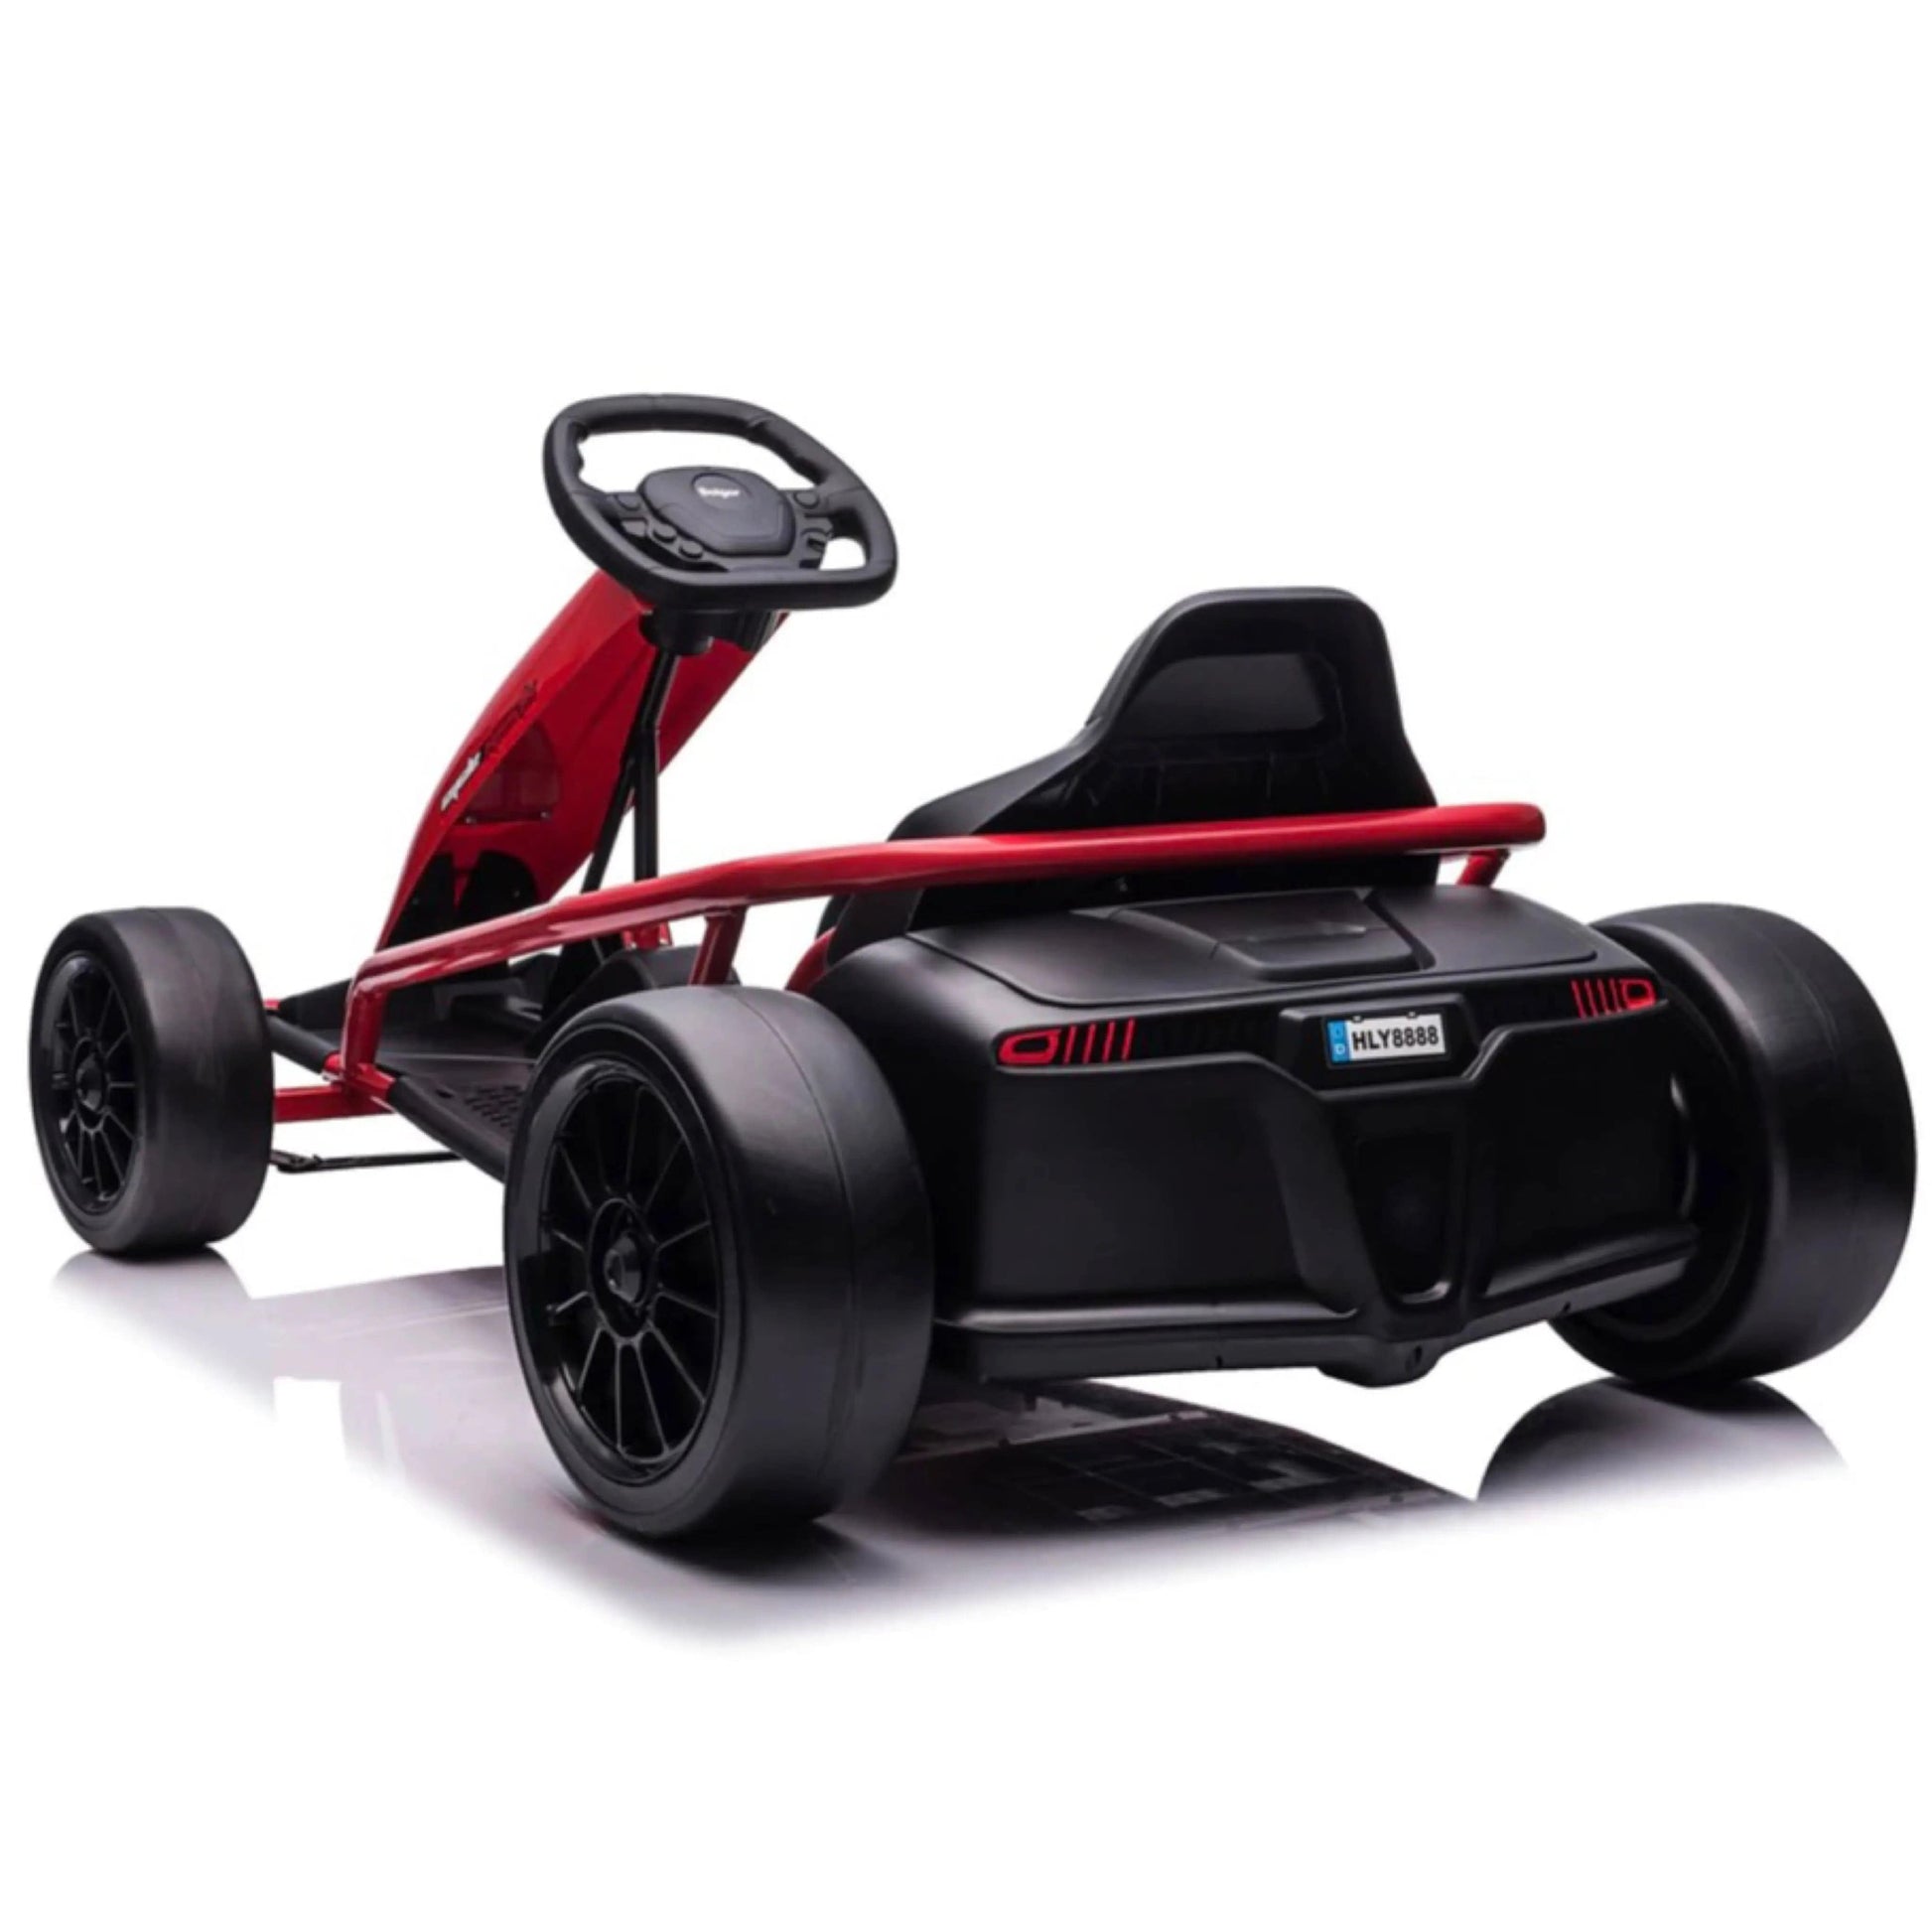 Drifter 2.0 - 24V Electric Go Kart R&G TOYS